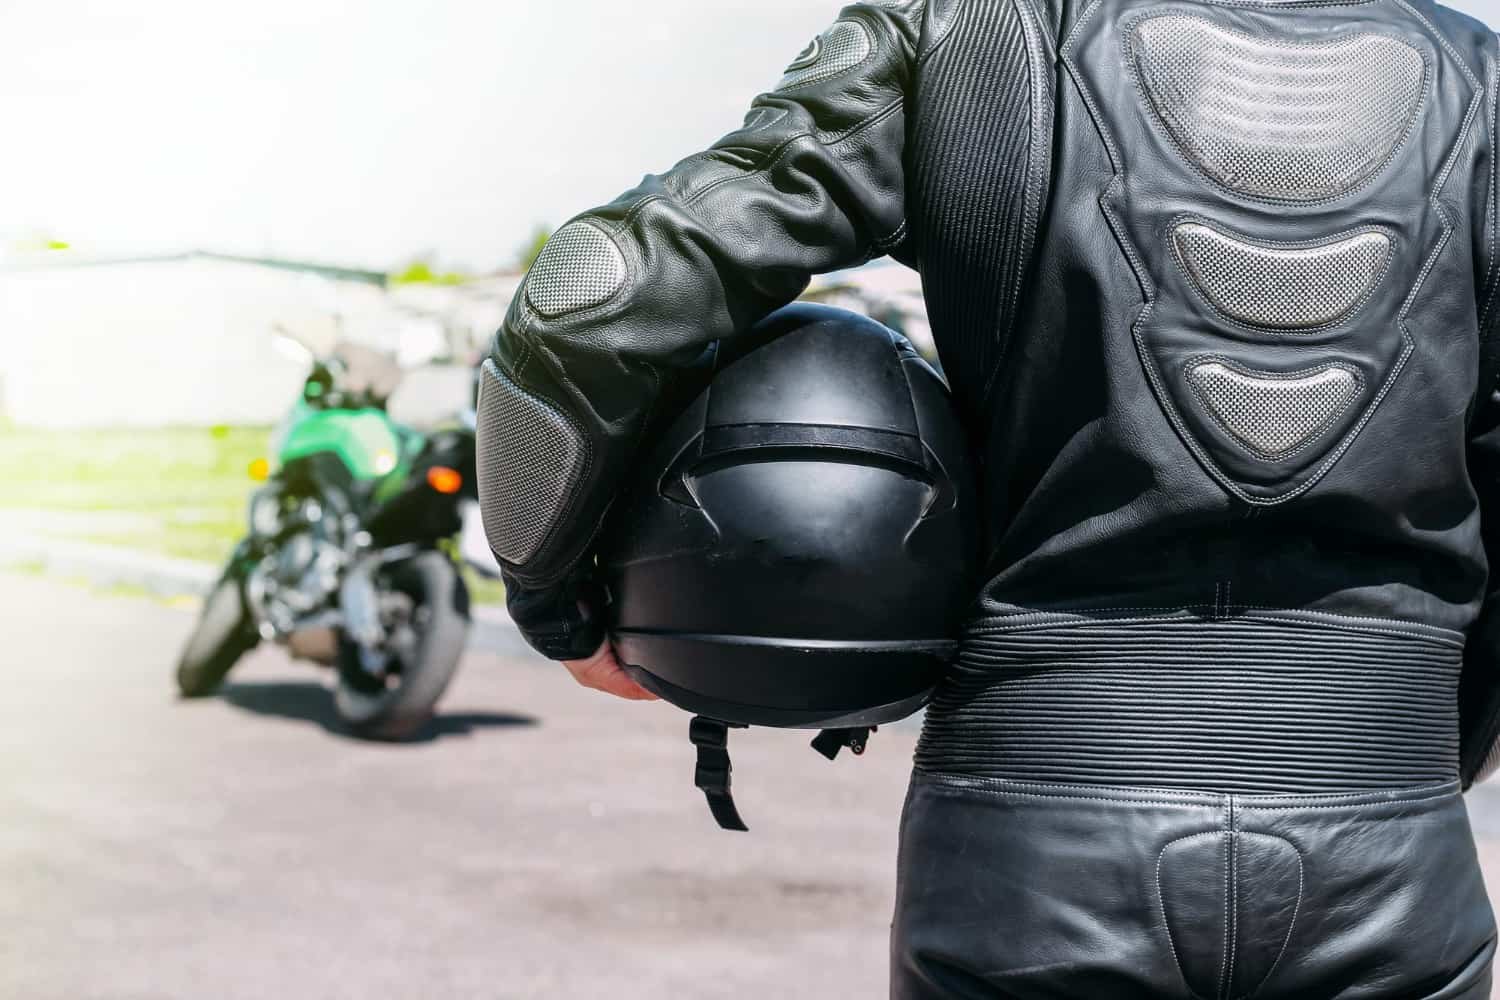 Piloto de motociclismo con equipo de protección completo y casco homologado de la FIM